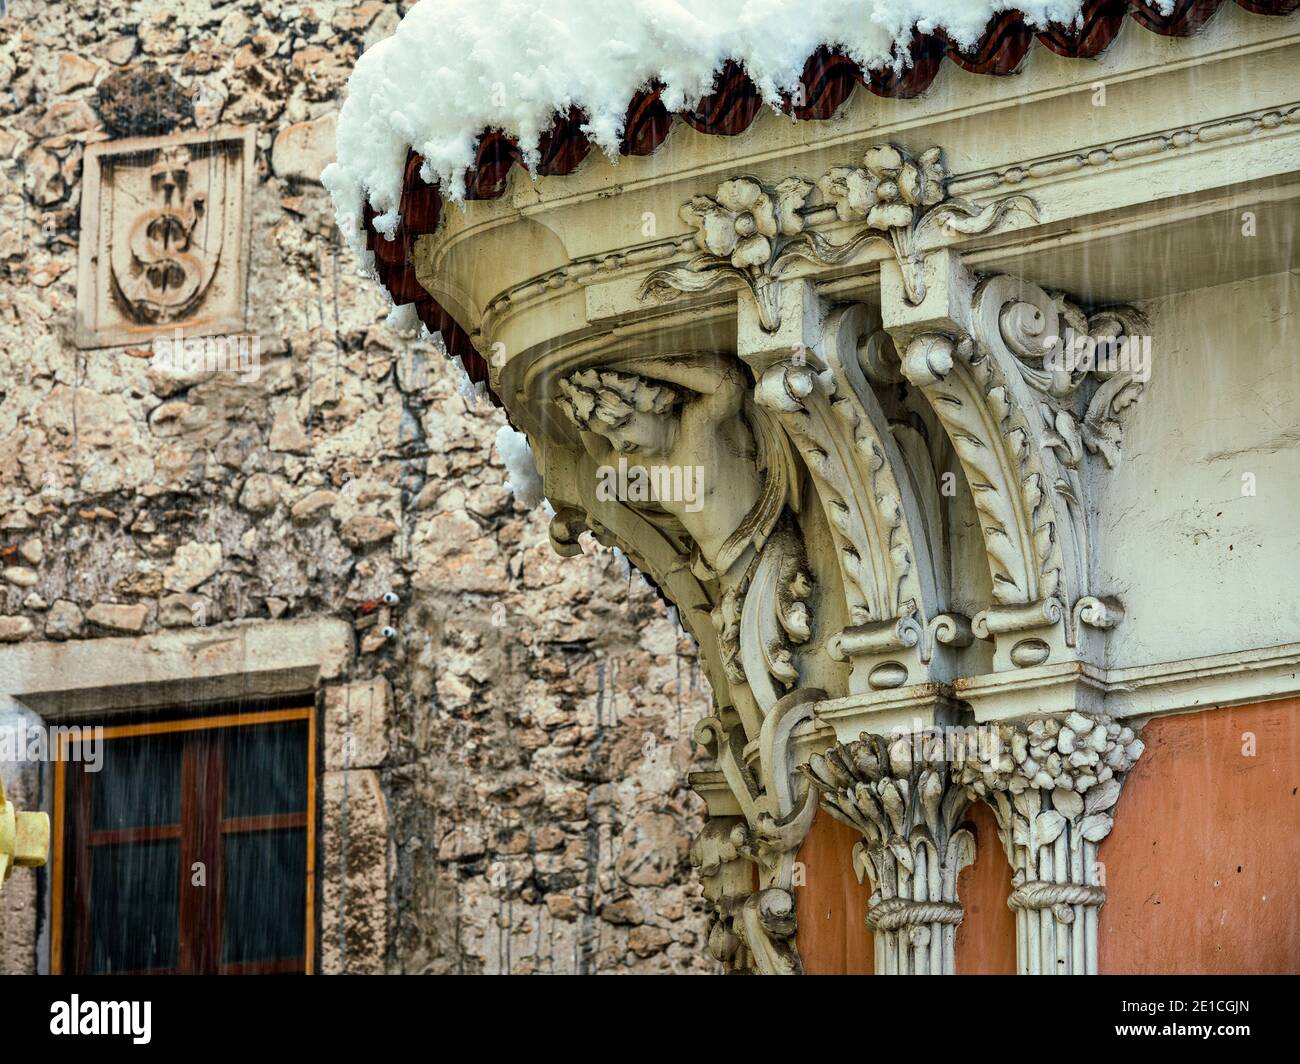 Details der Freiheitsarchitektur, Jugendstil, in einer alten Stadt Abruzzen. Im Hintergrund das Symbol der Celestines. Abruzzen, Italien, Europa Stockfoto